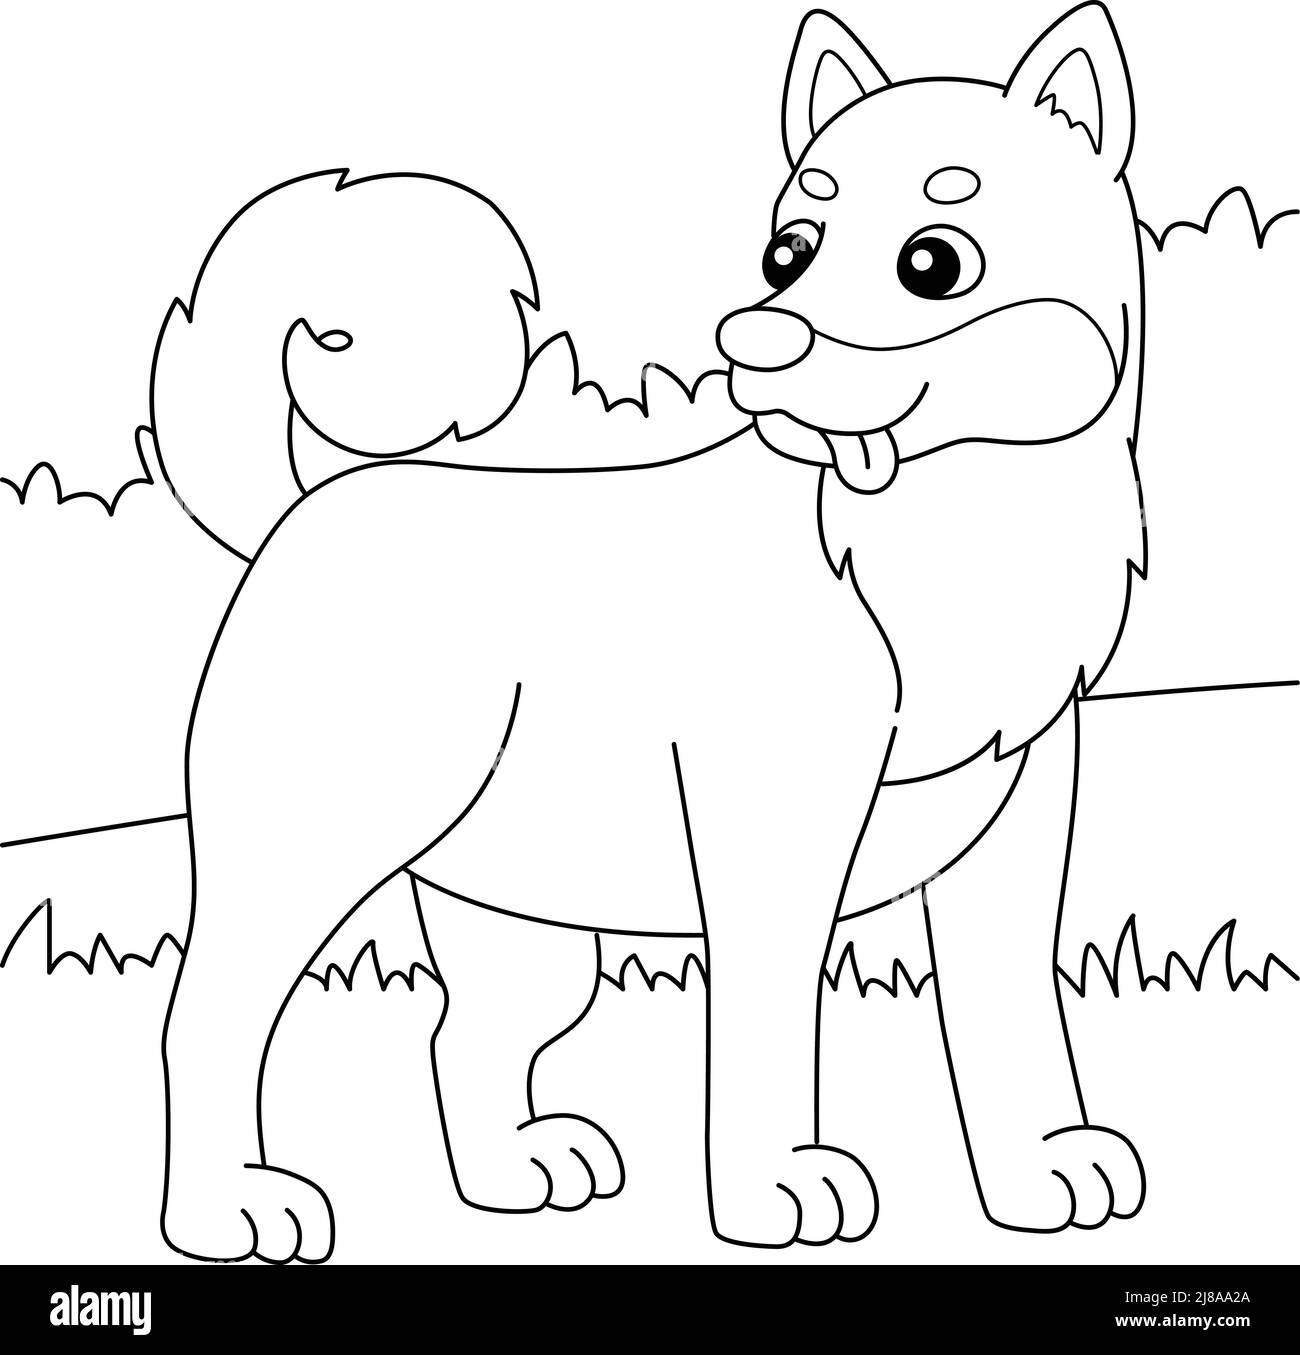 Shiba Inu Dog Coloring Page for Kids Illustrazione Vettoriale